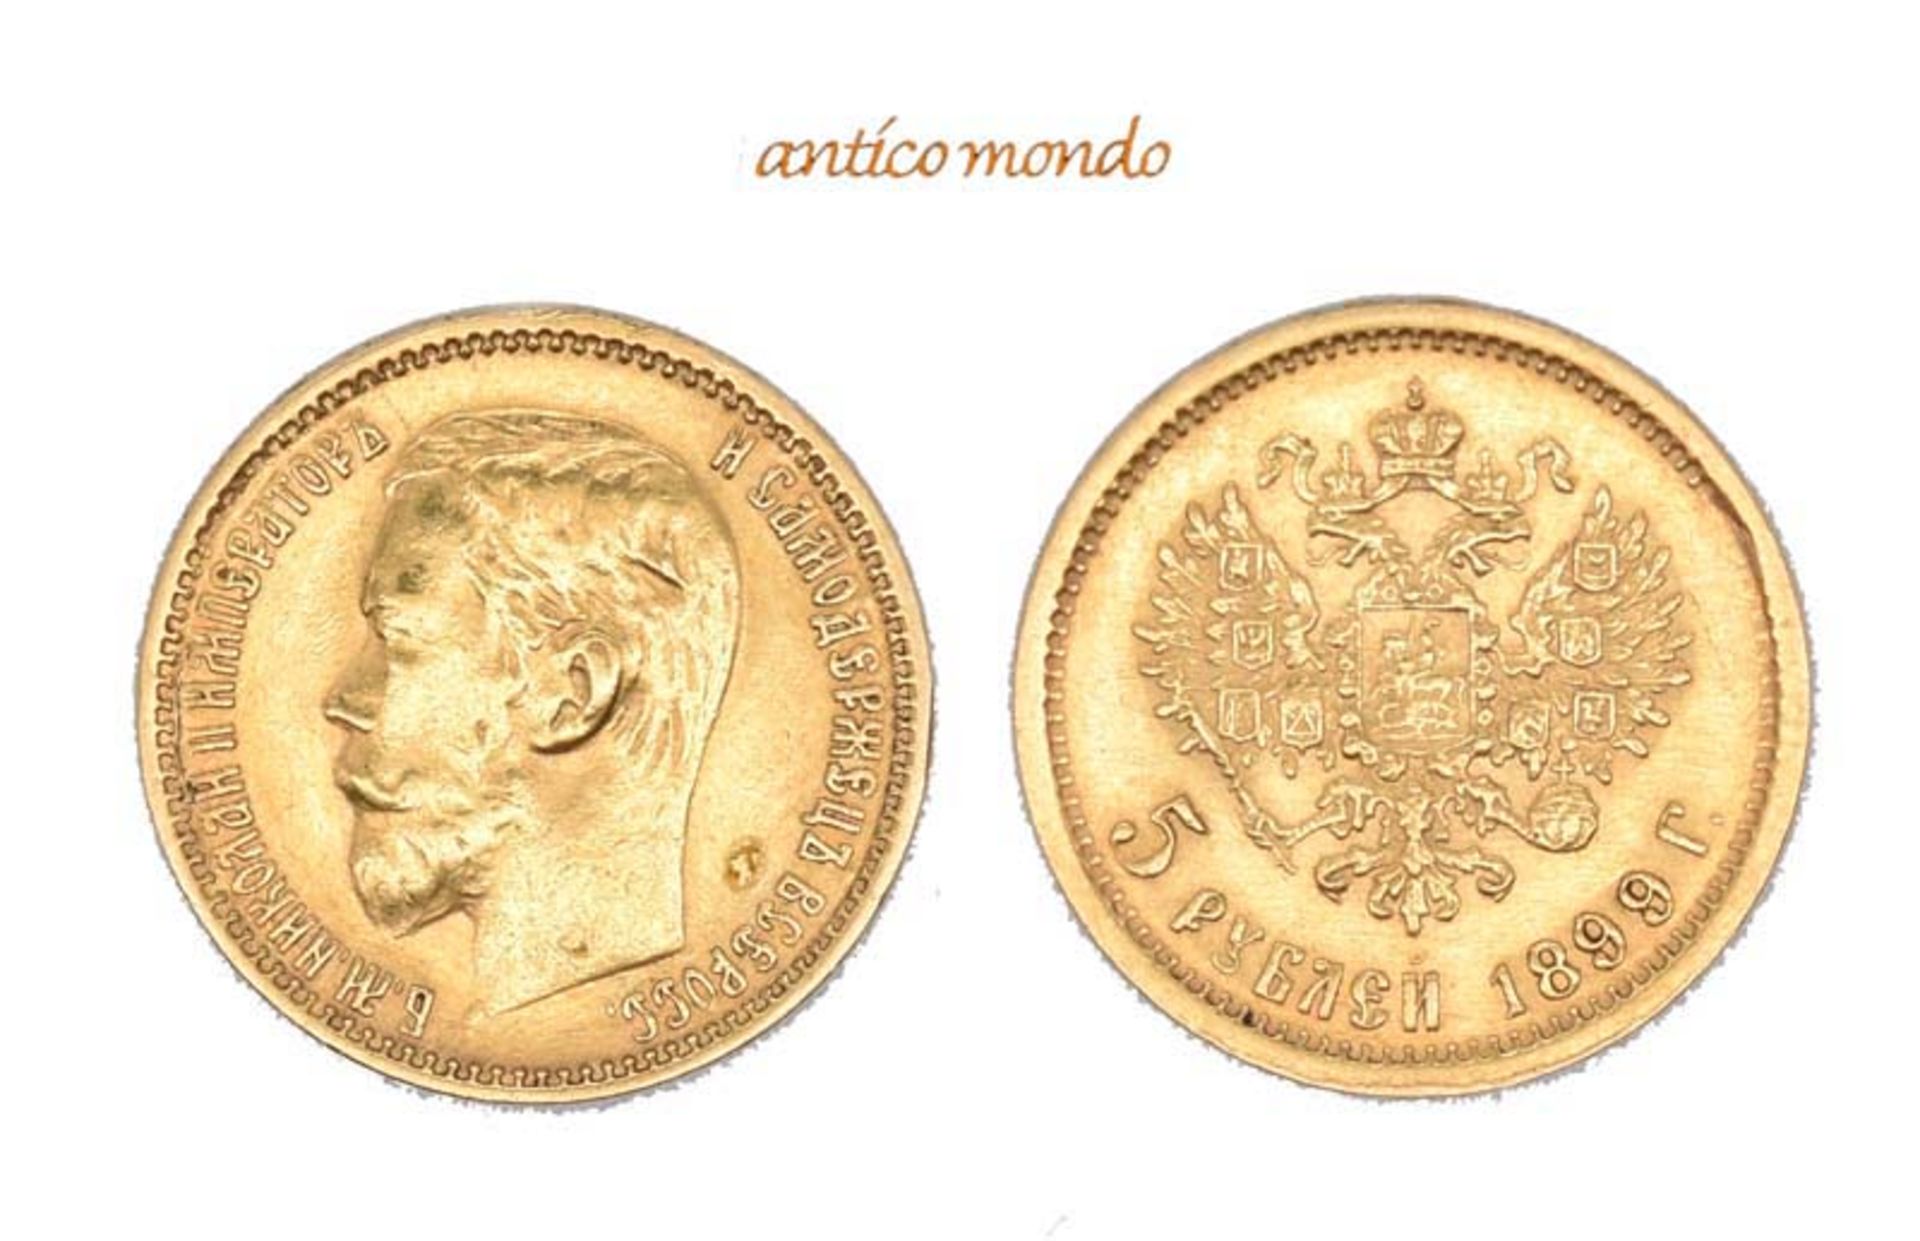 Russland, Nikolaus II., 1894-1917, 5 Rubel, 1899, fast vorzüglich, 4,32 g- - -21.50 % buyer's